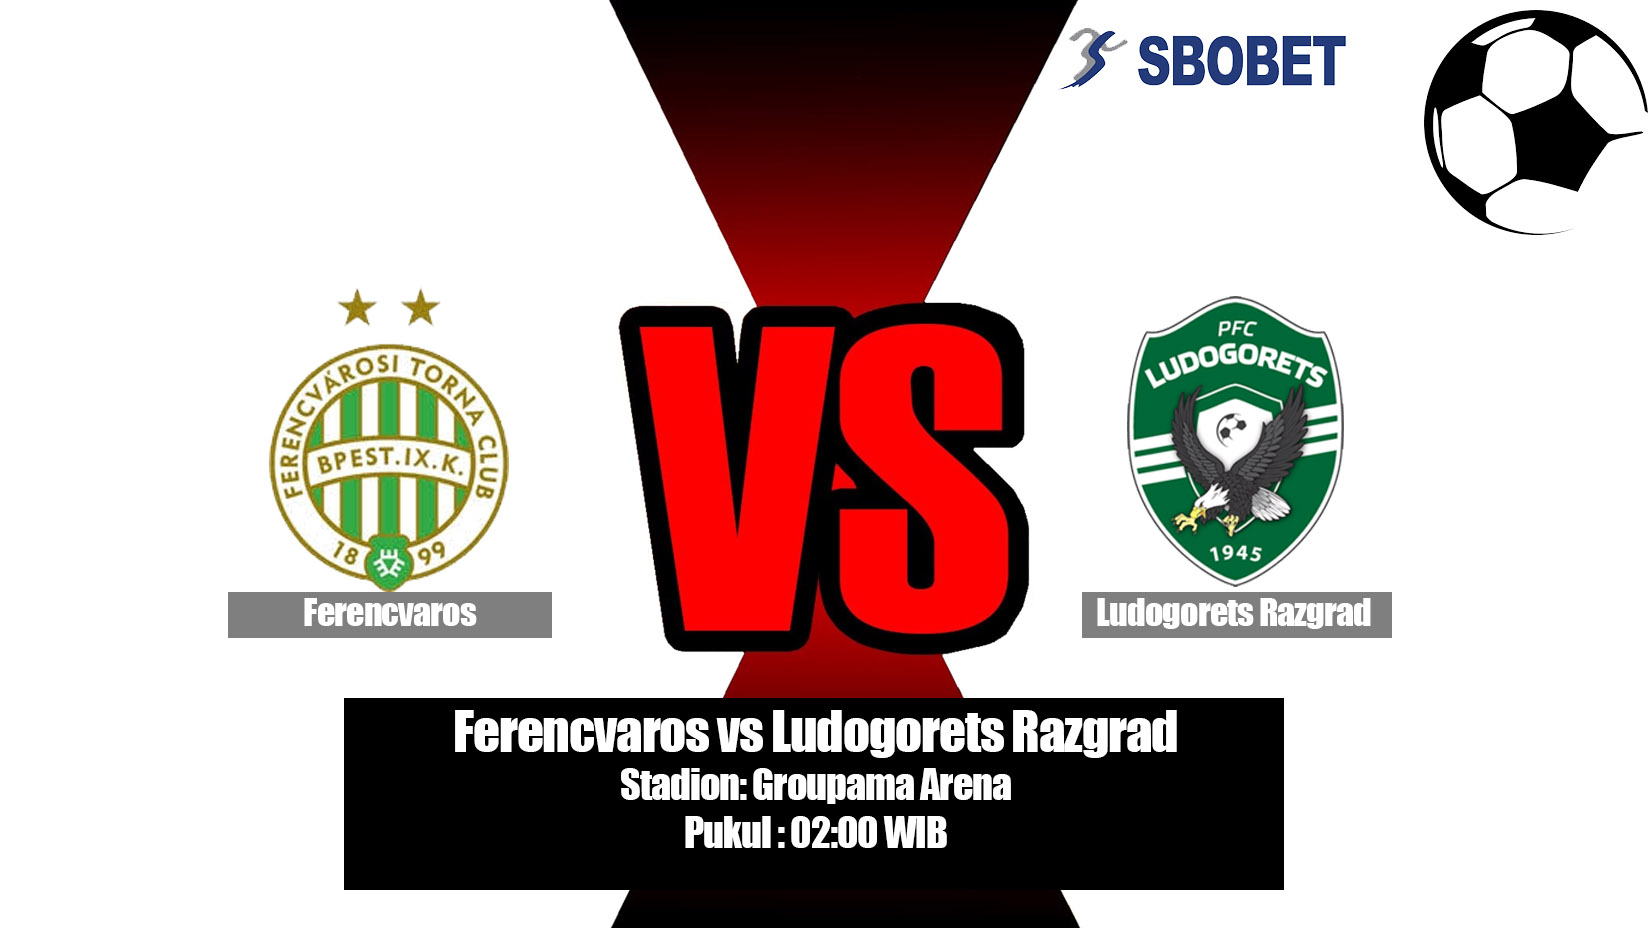 Prediksi Bola Ferencvaros vs Ludogorets Razgrad 11 Juli 2019